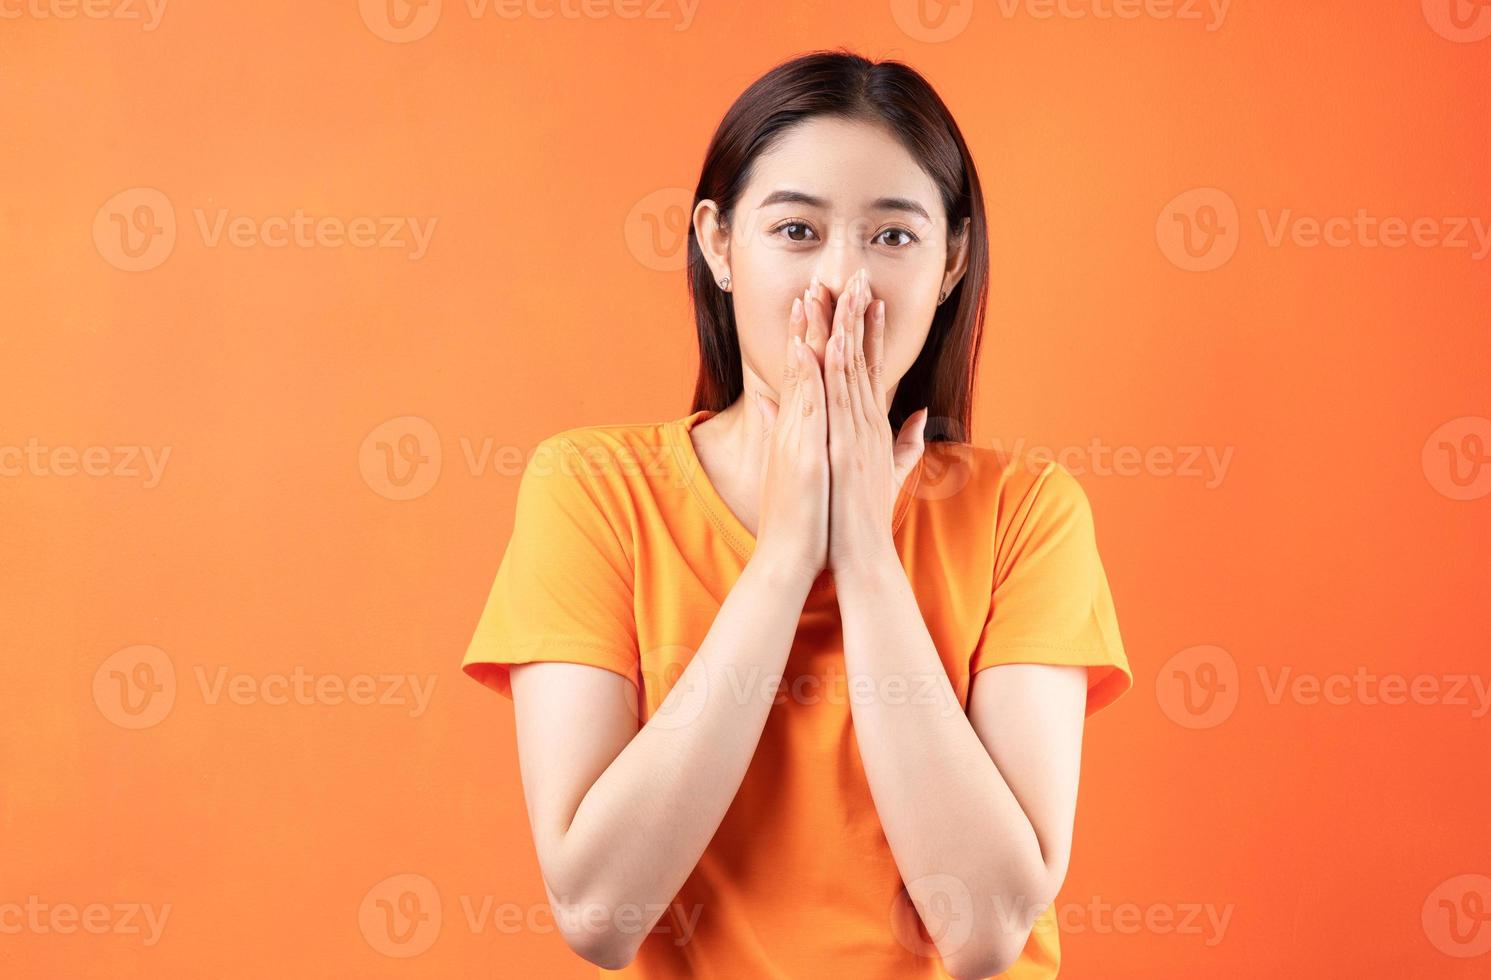 la donna asiatica si coprì la bocca perché era troppo sorpresa foto